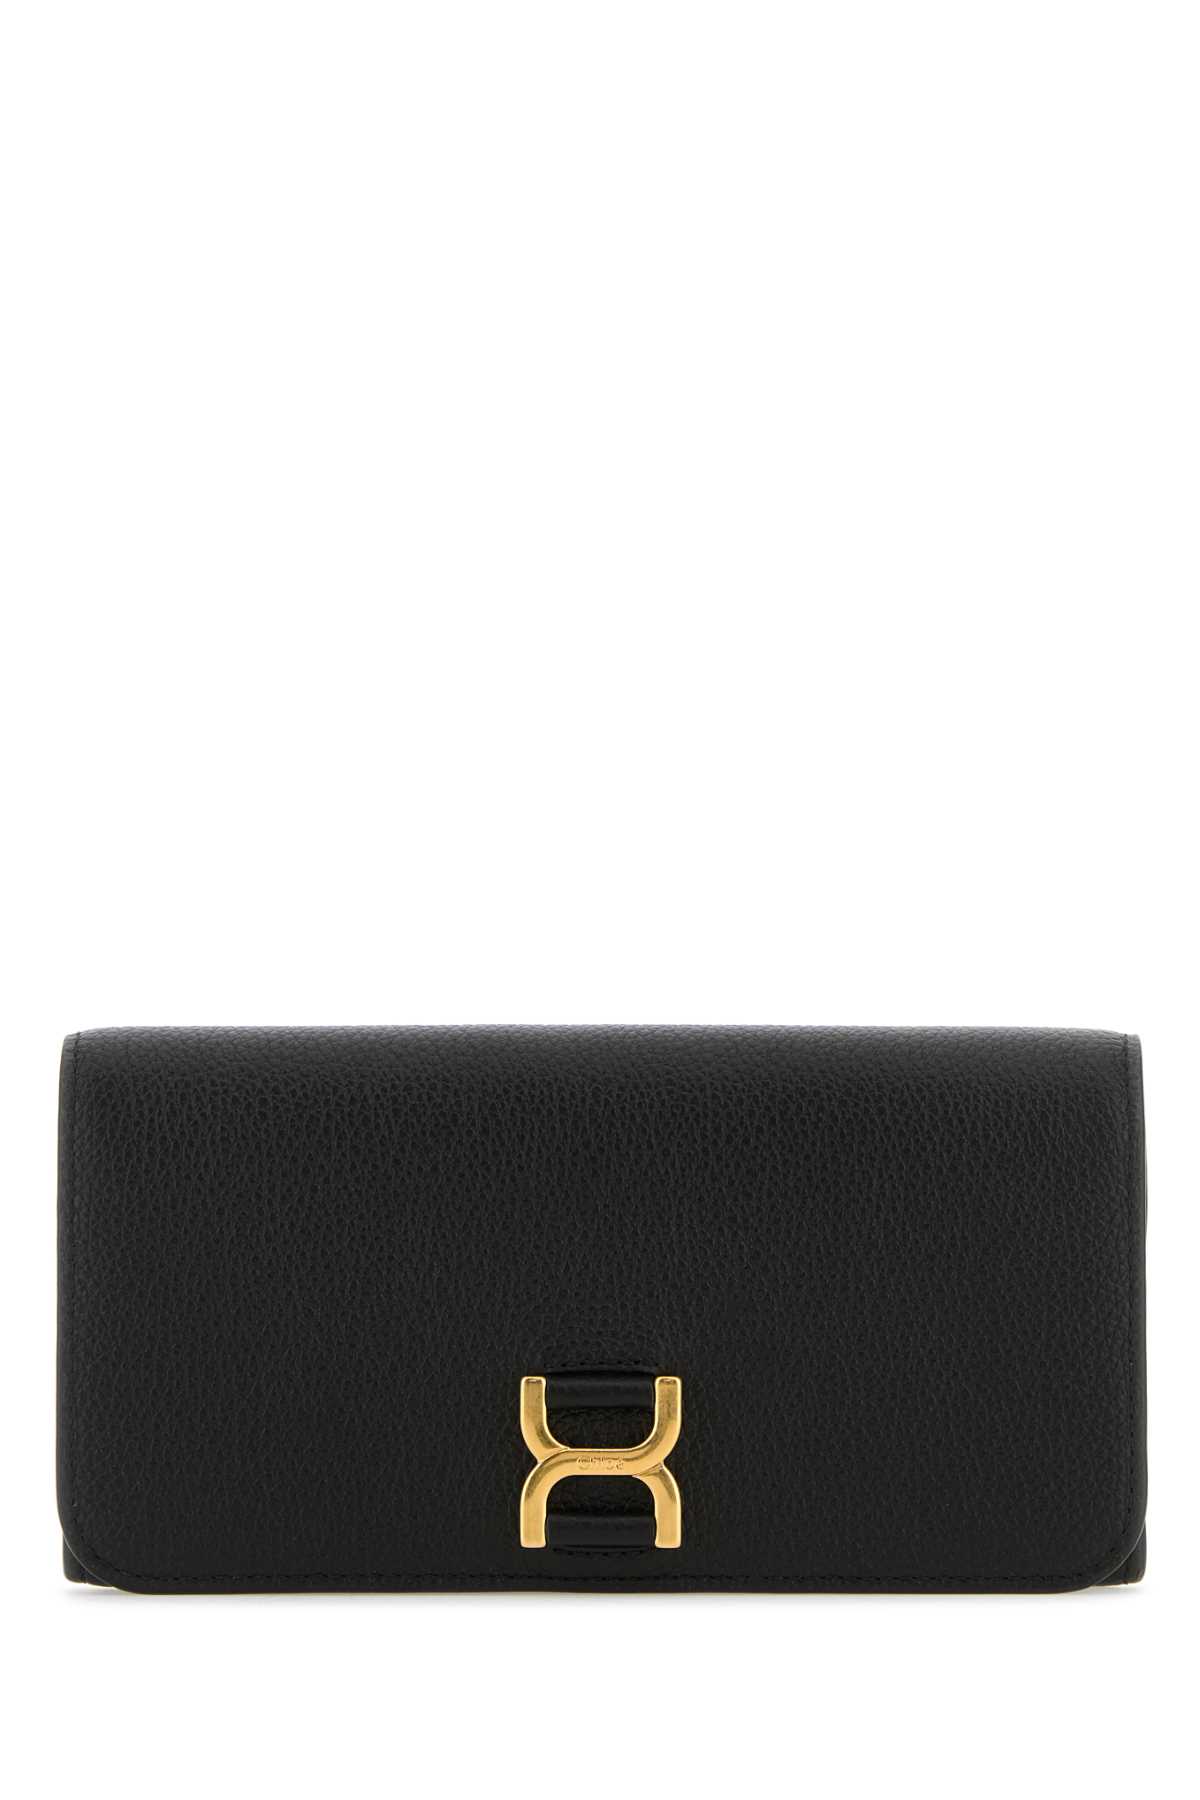 Shop Chloé Black Leather Wallet